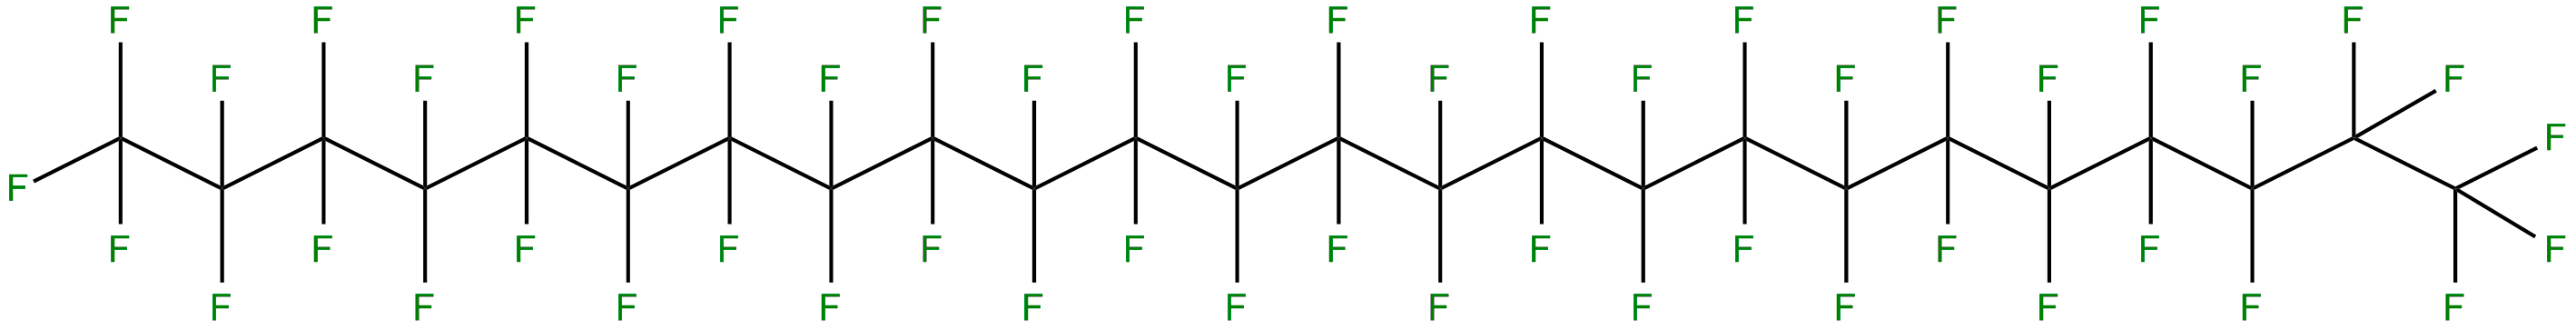 Image of pentacontafluorotetracosane